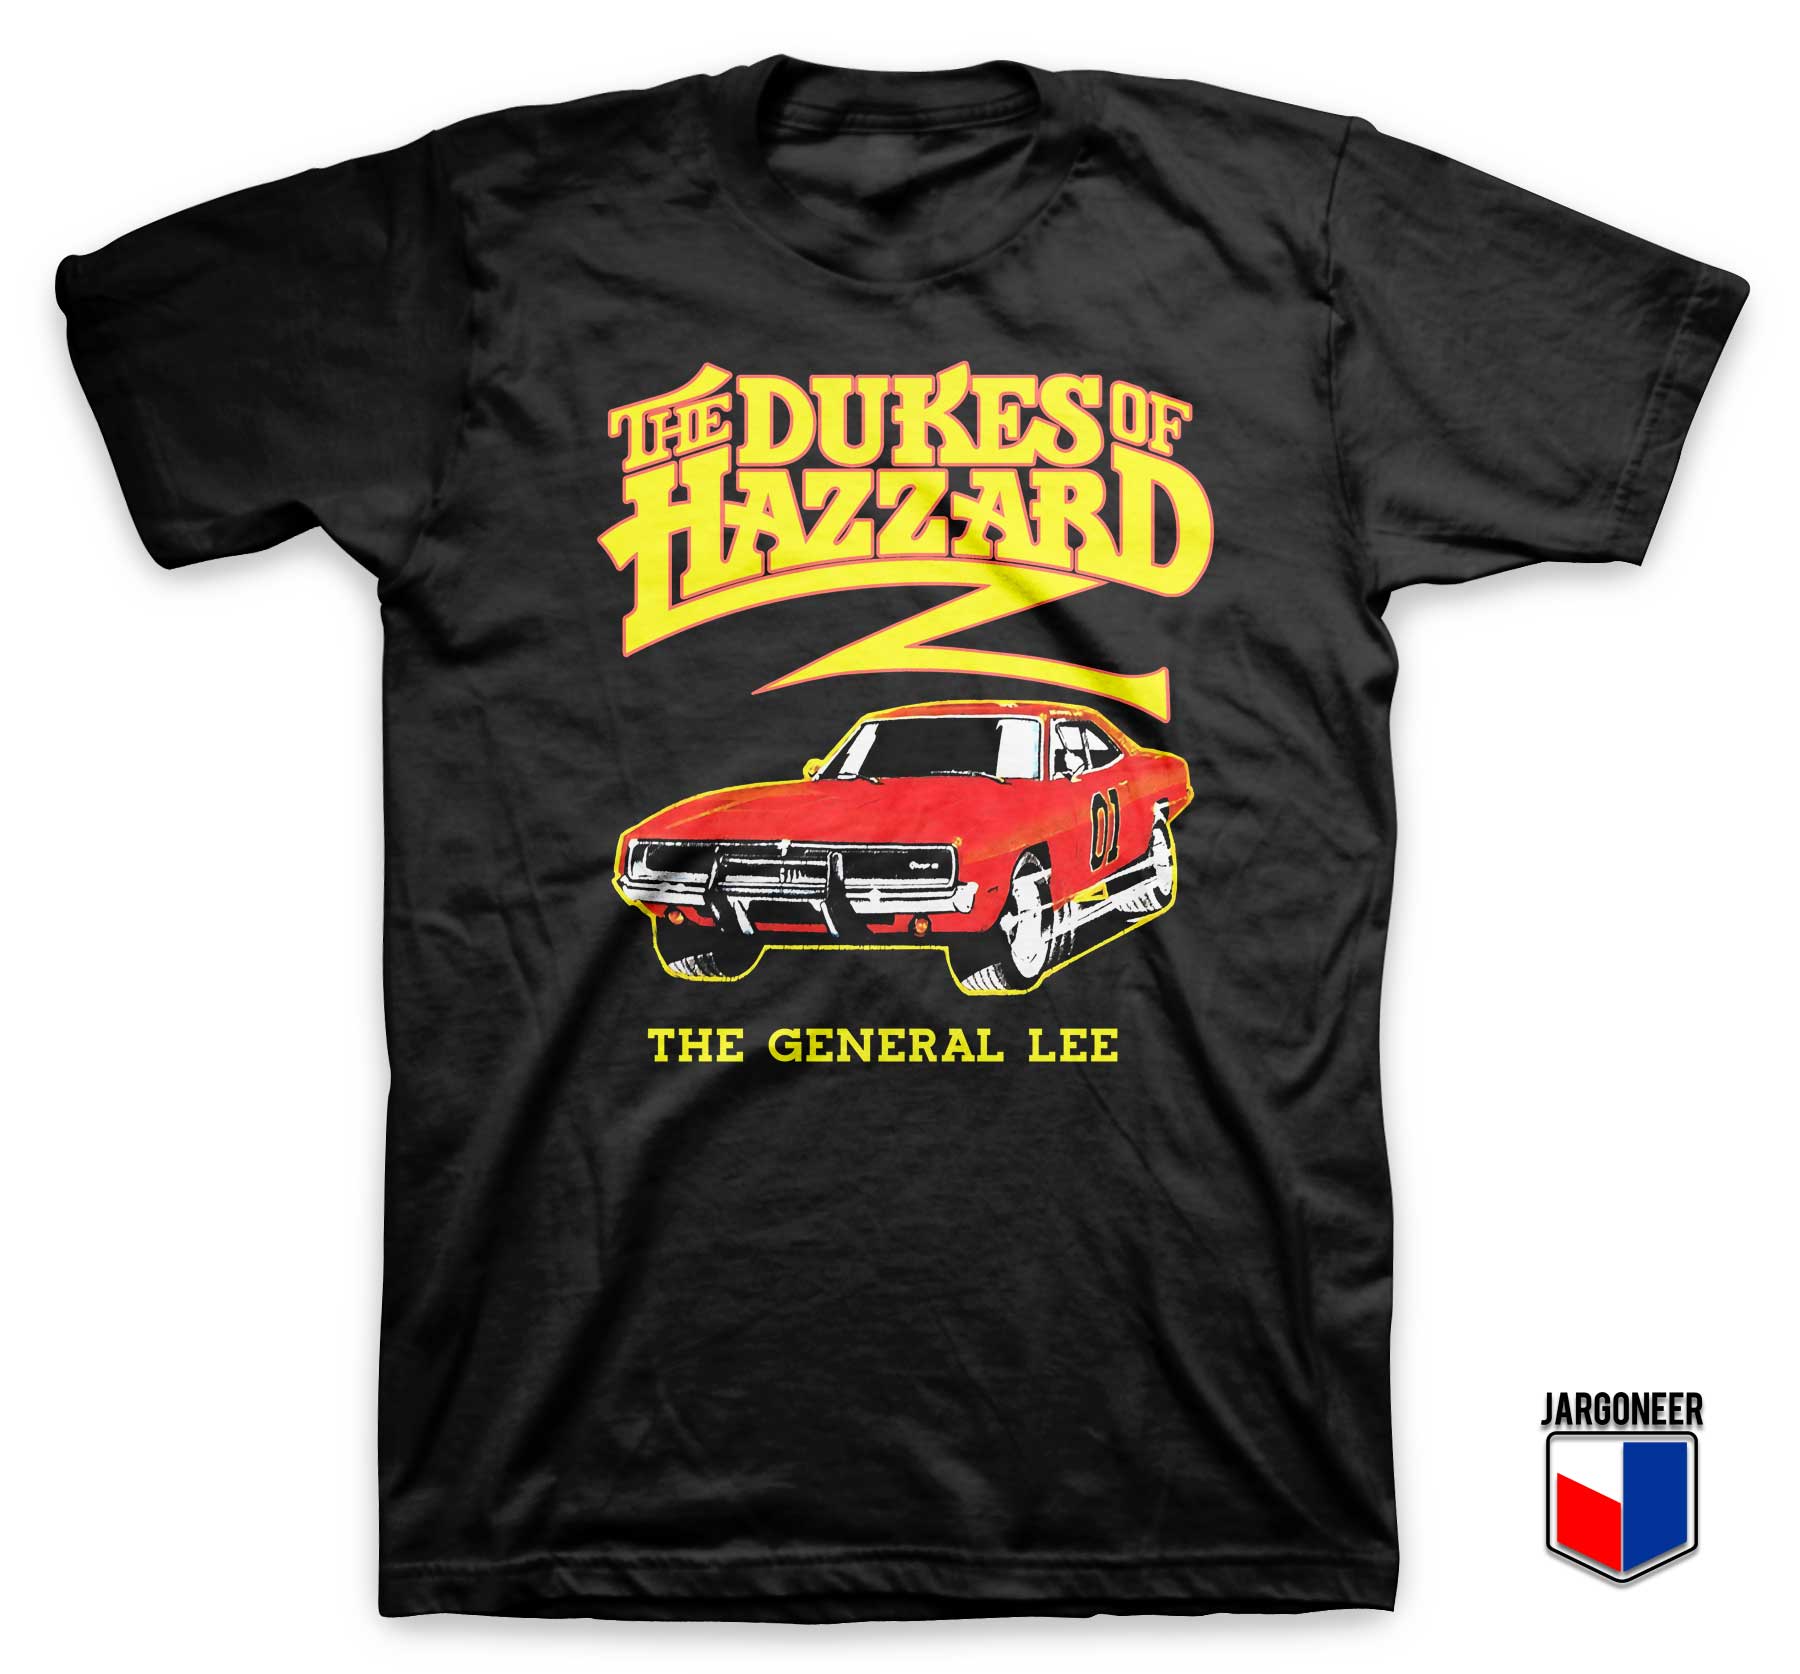 The Dukes Of Hazzard T Shirt - Shop Unique Graphic Cool Shirt Designs